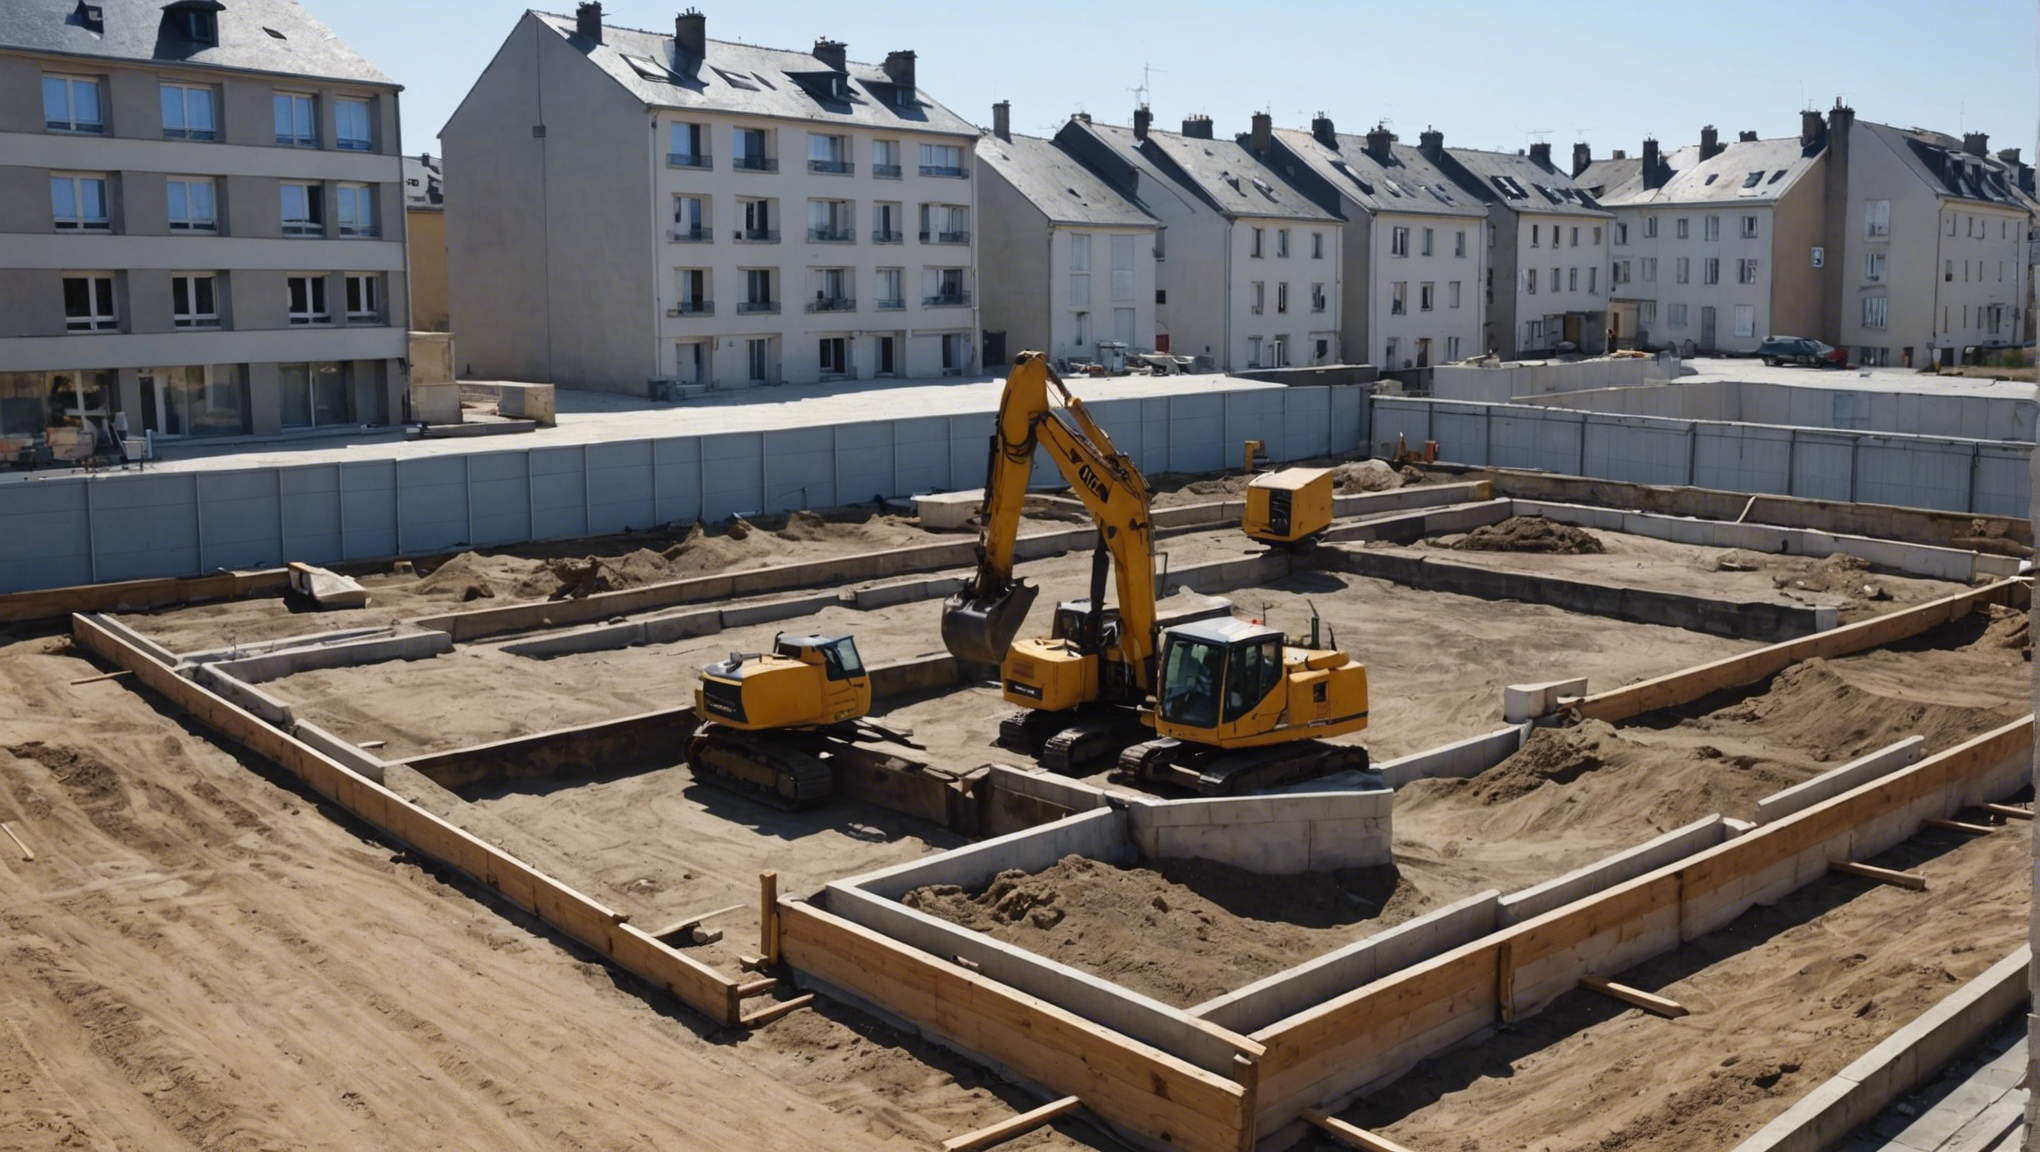 découvrez l'importance du terrassement pour votre chantier et comment il joue un rôle essentiel dans la préparation des fondations et de l'aménagement de votre projet de construction.